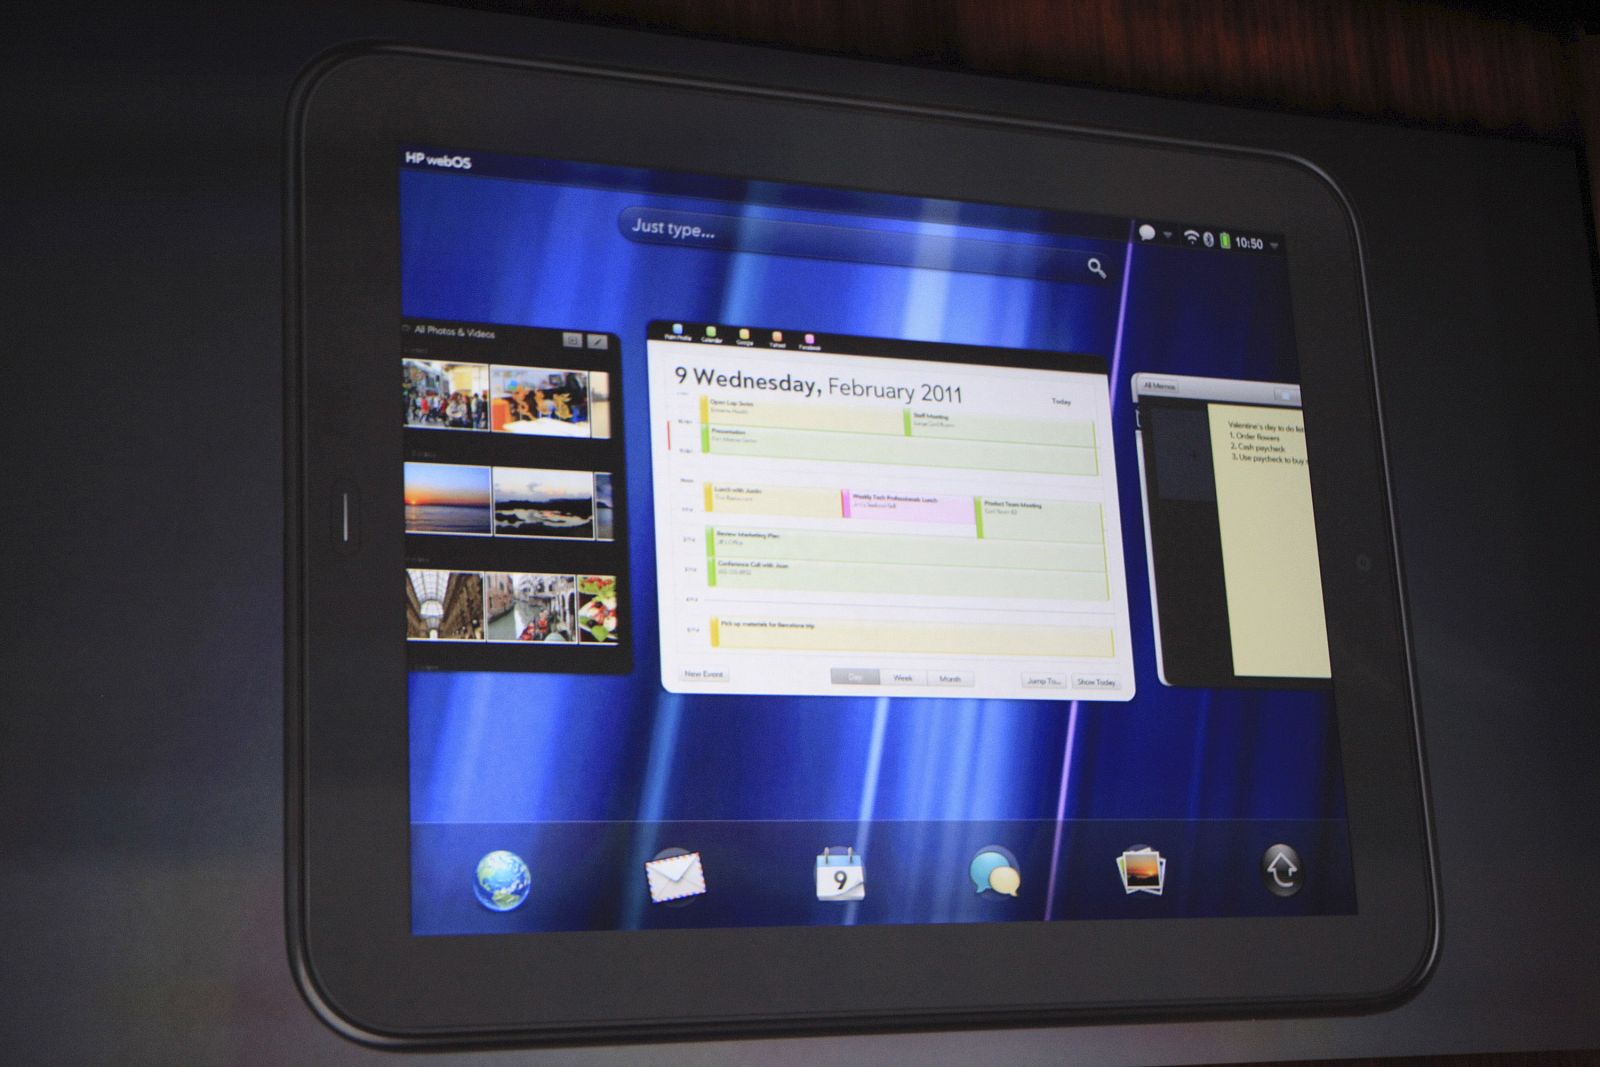 El nuevo TouchPad de HP durante la presentación que se realizó en San Francisco, California